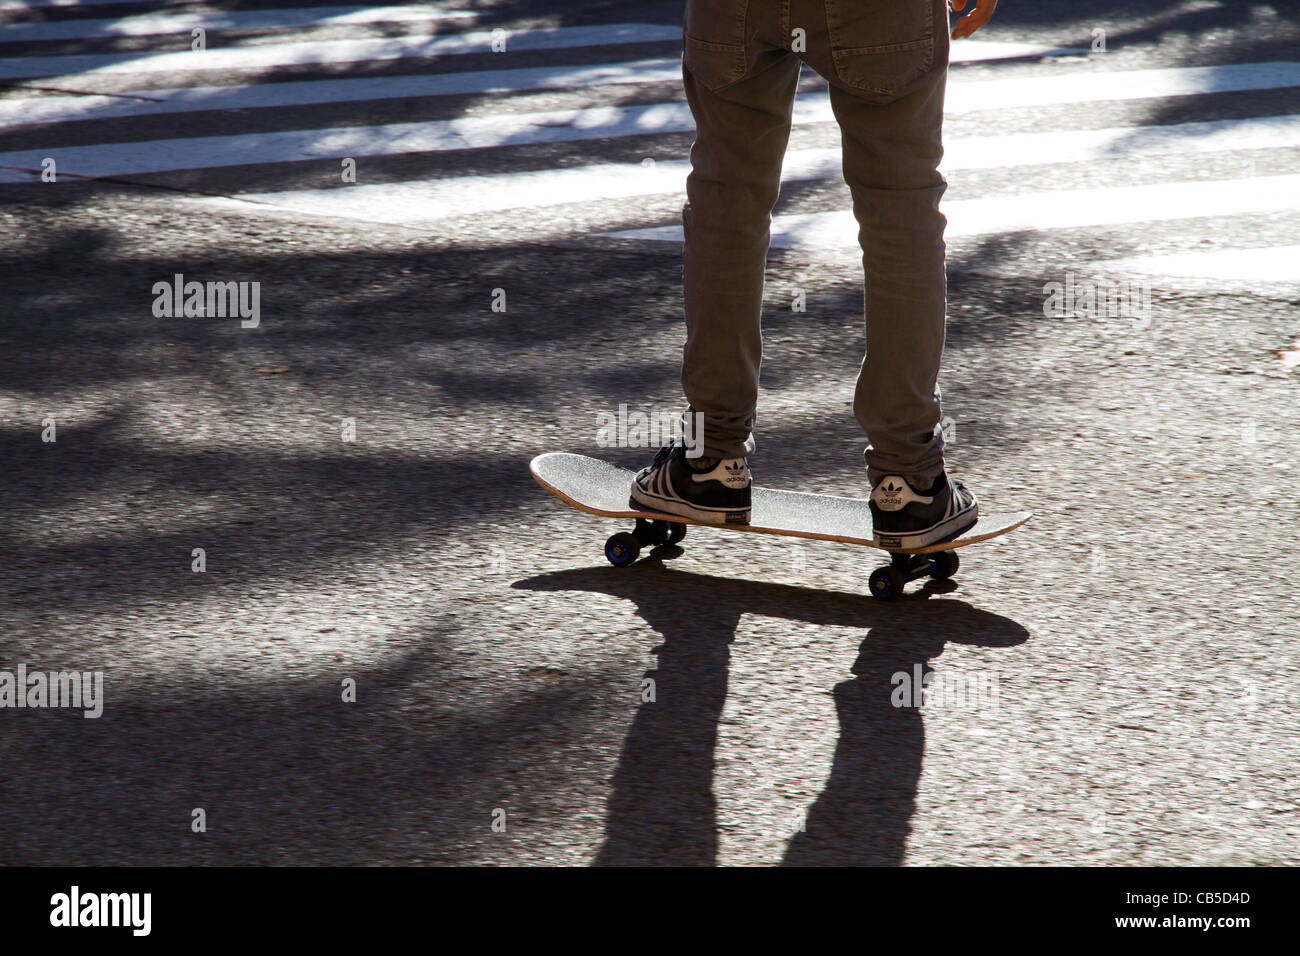 Persona en patineta skateboarding en action sport Foto de stock